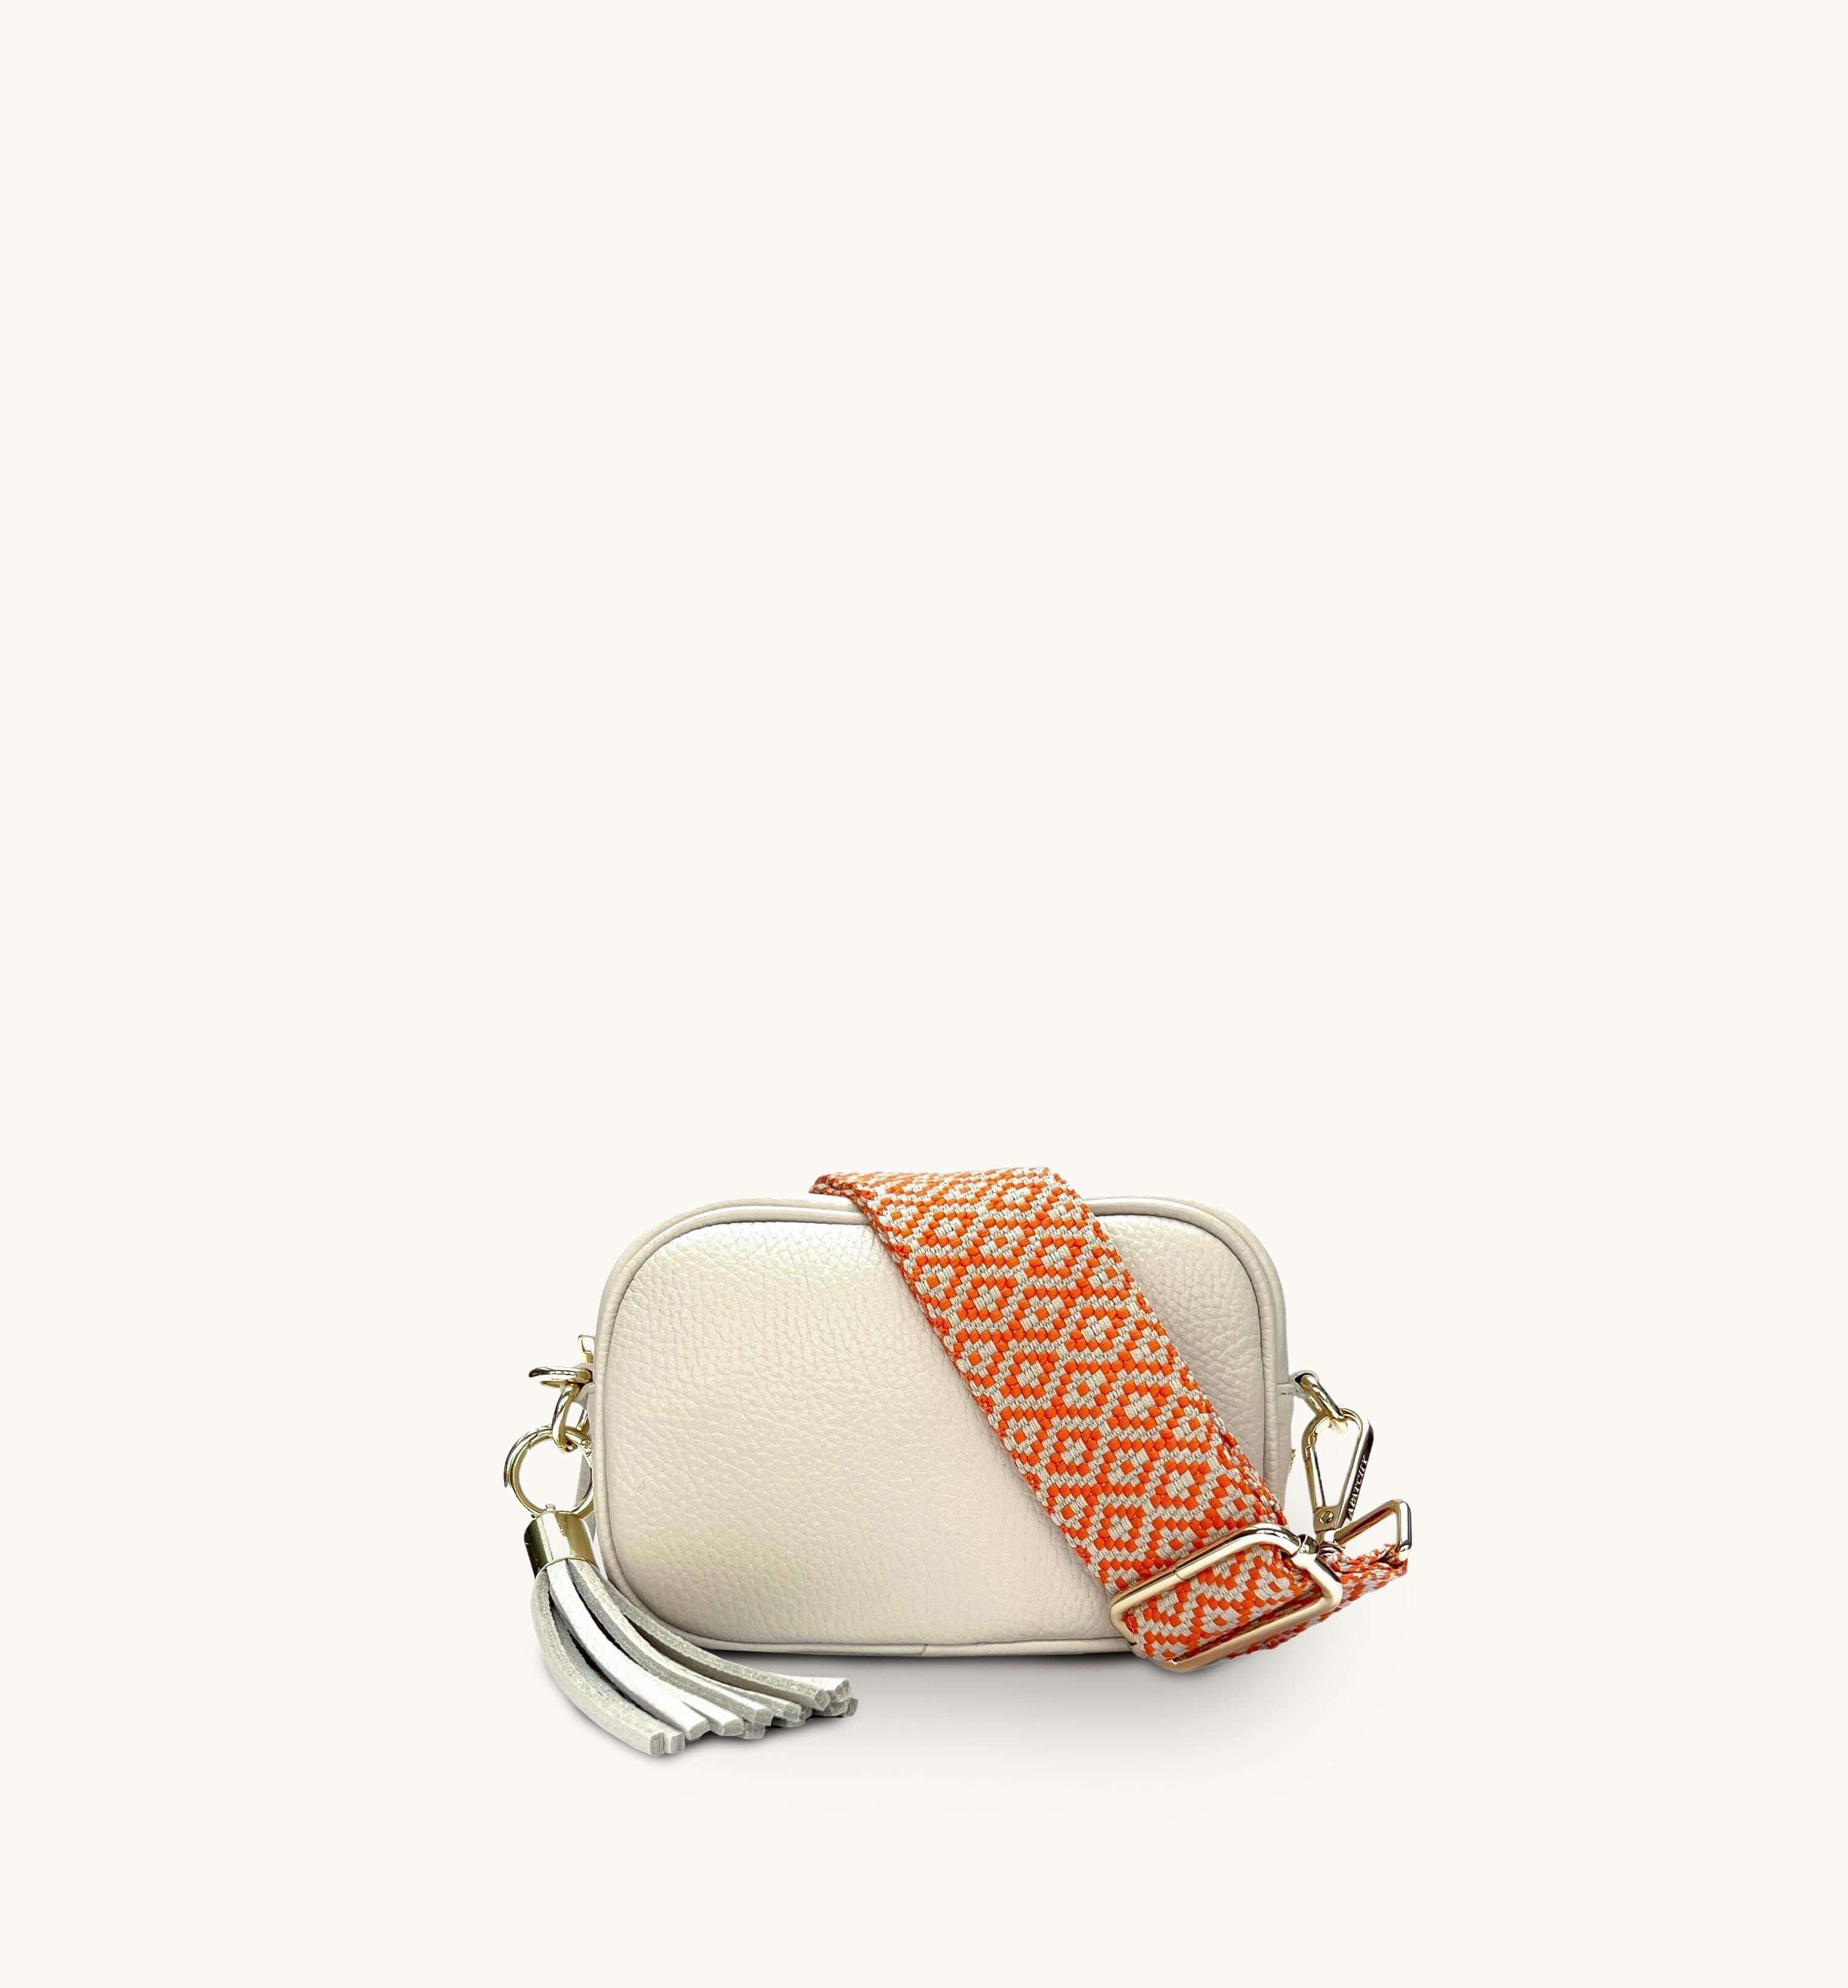 Кожаная сумка для телефона Mini с кисточками и оранжевым ремешком с вышивкой крестиком Apatchy London, бежевый сумка улитка оранжевый